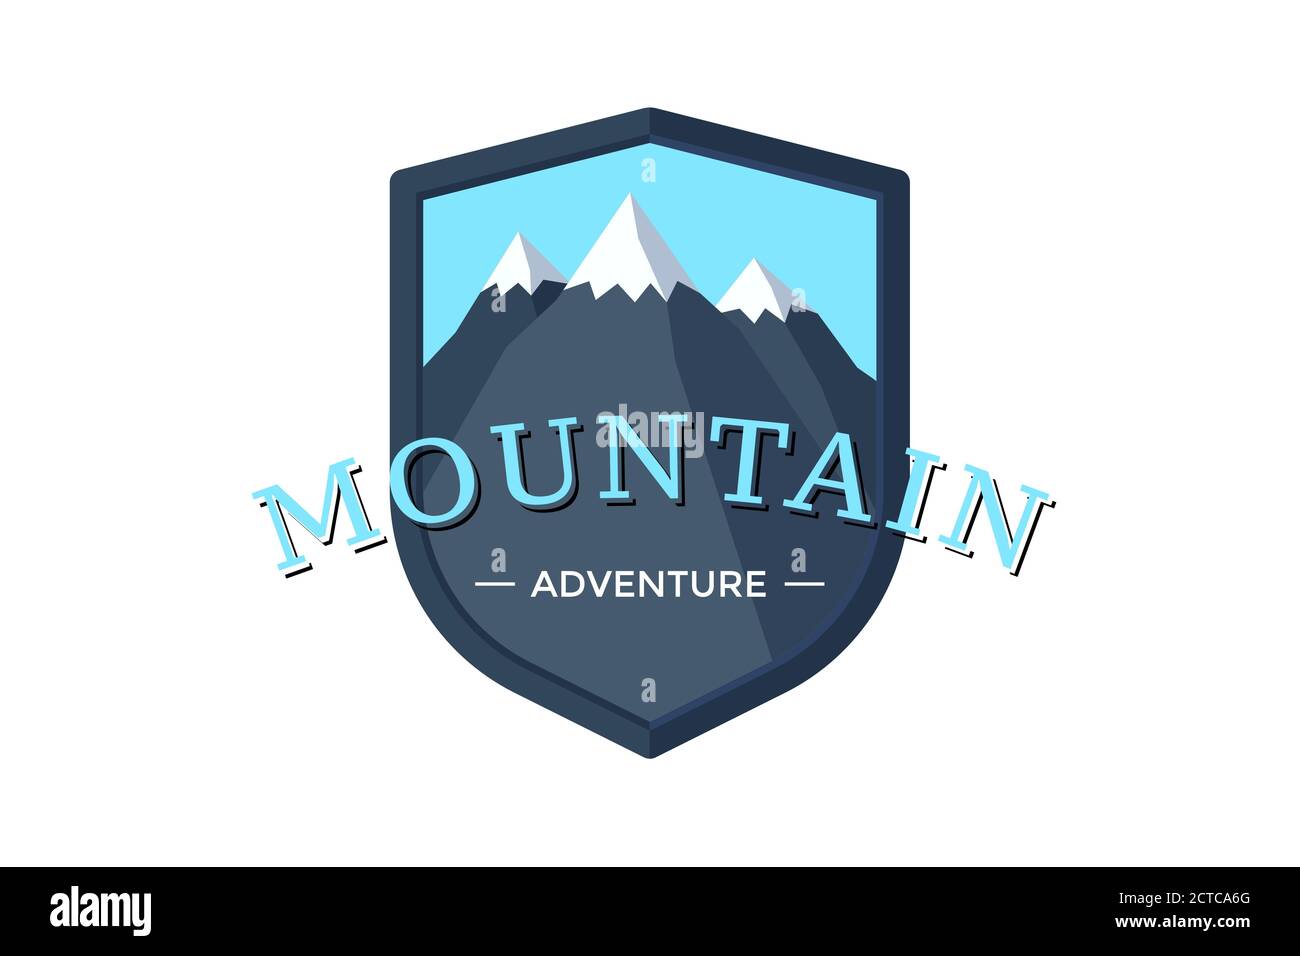 Mountain Adventure Schild Logo Abzeichen für Extremtourismus und Sportwandern. Outdoor Natur Rock Camping Label Vektor Illustration Stock Vektor